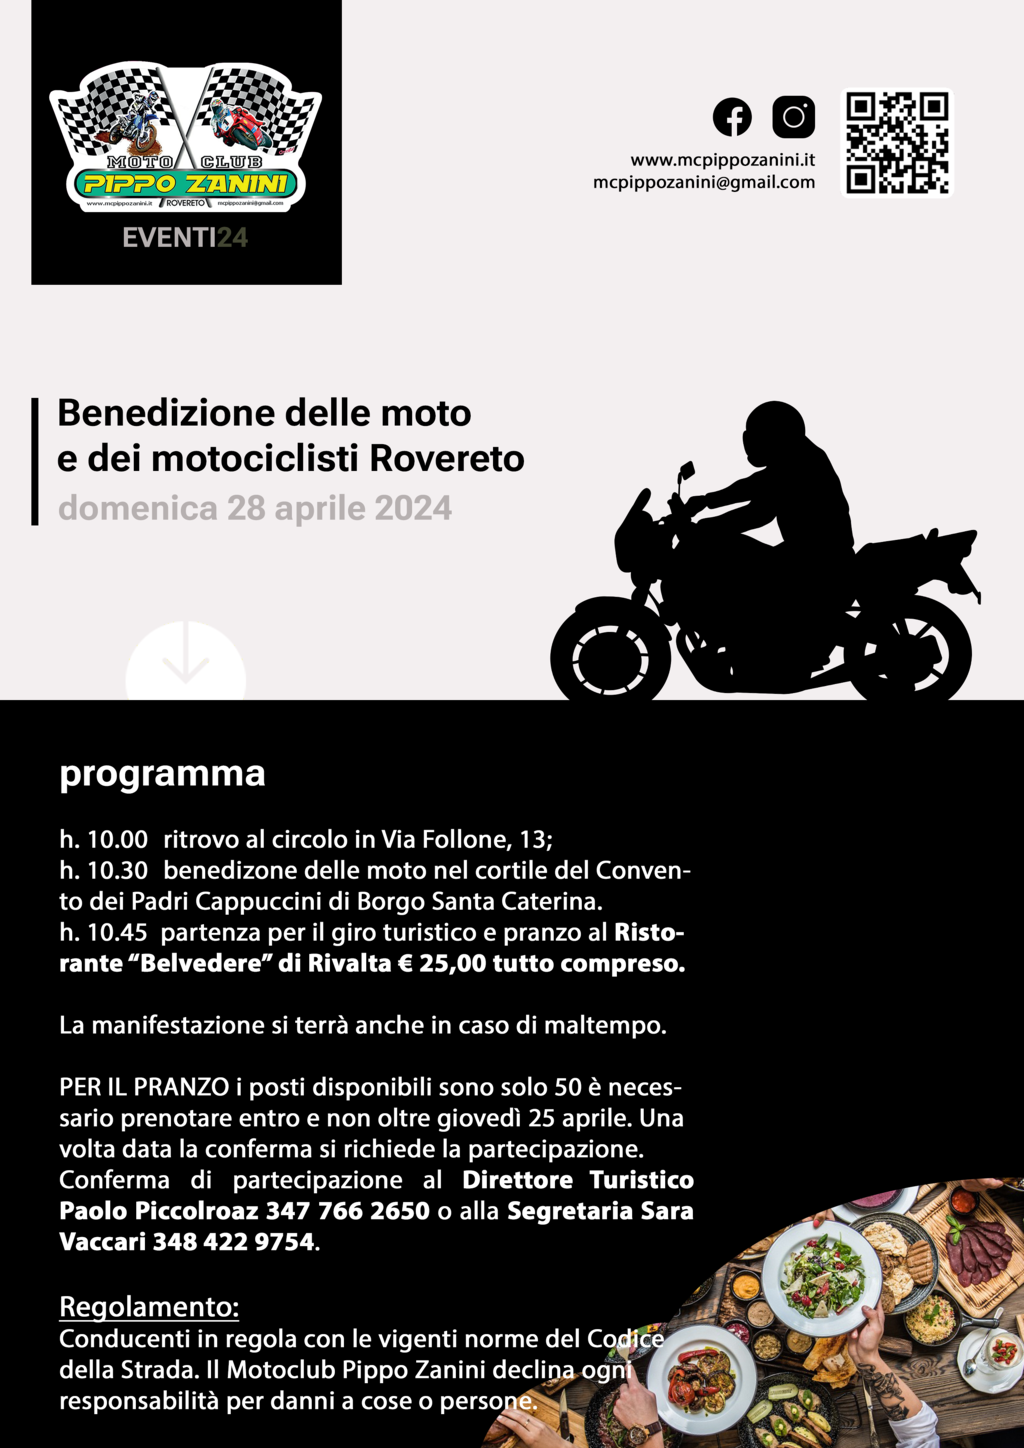 Benedizione delle moto e dei motociclisti di Rovereto